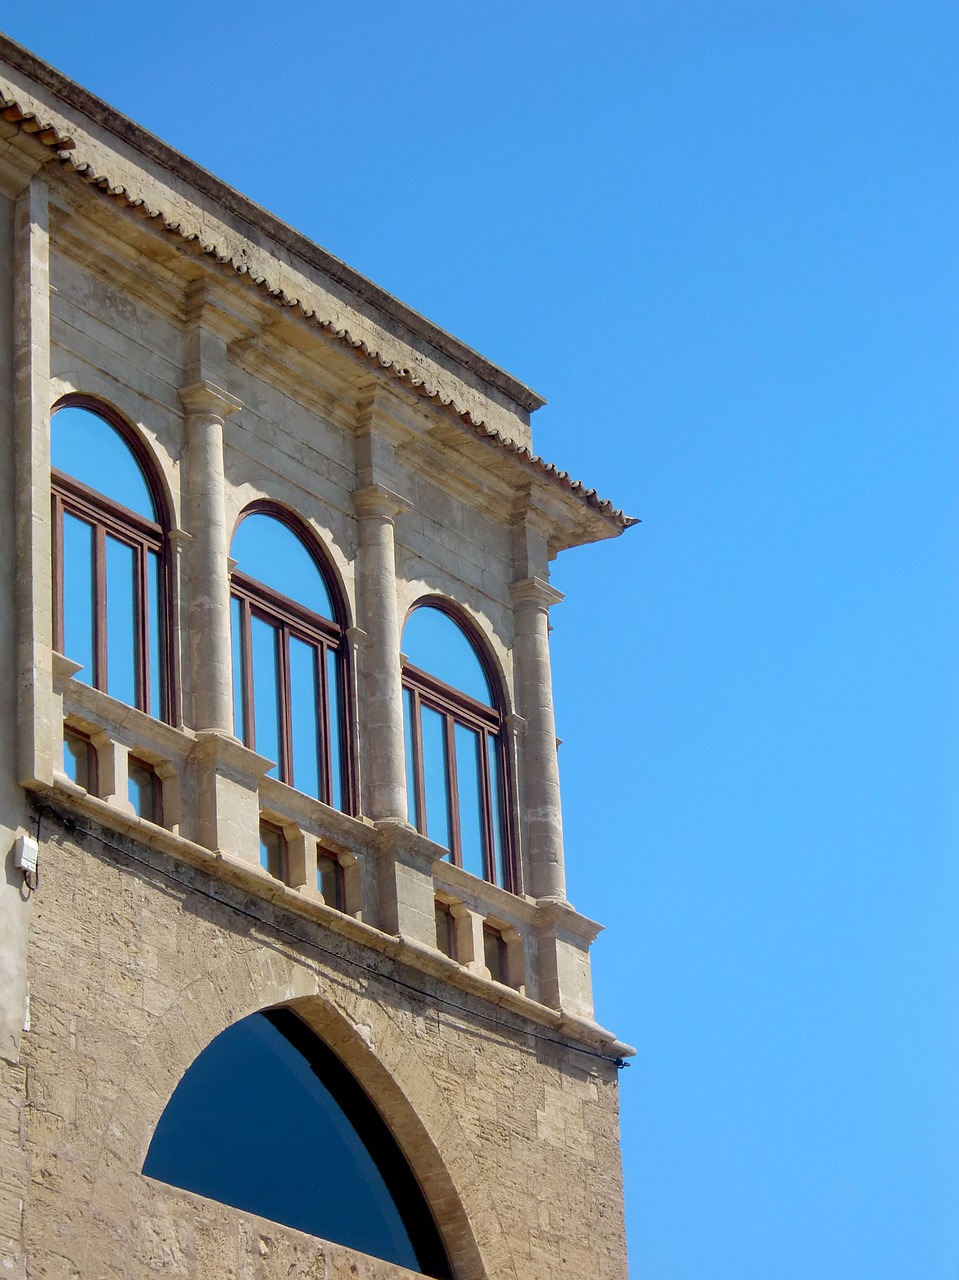 Image - loggia window facade architecture